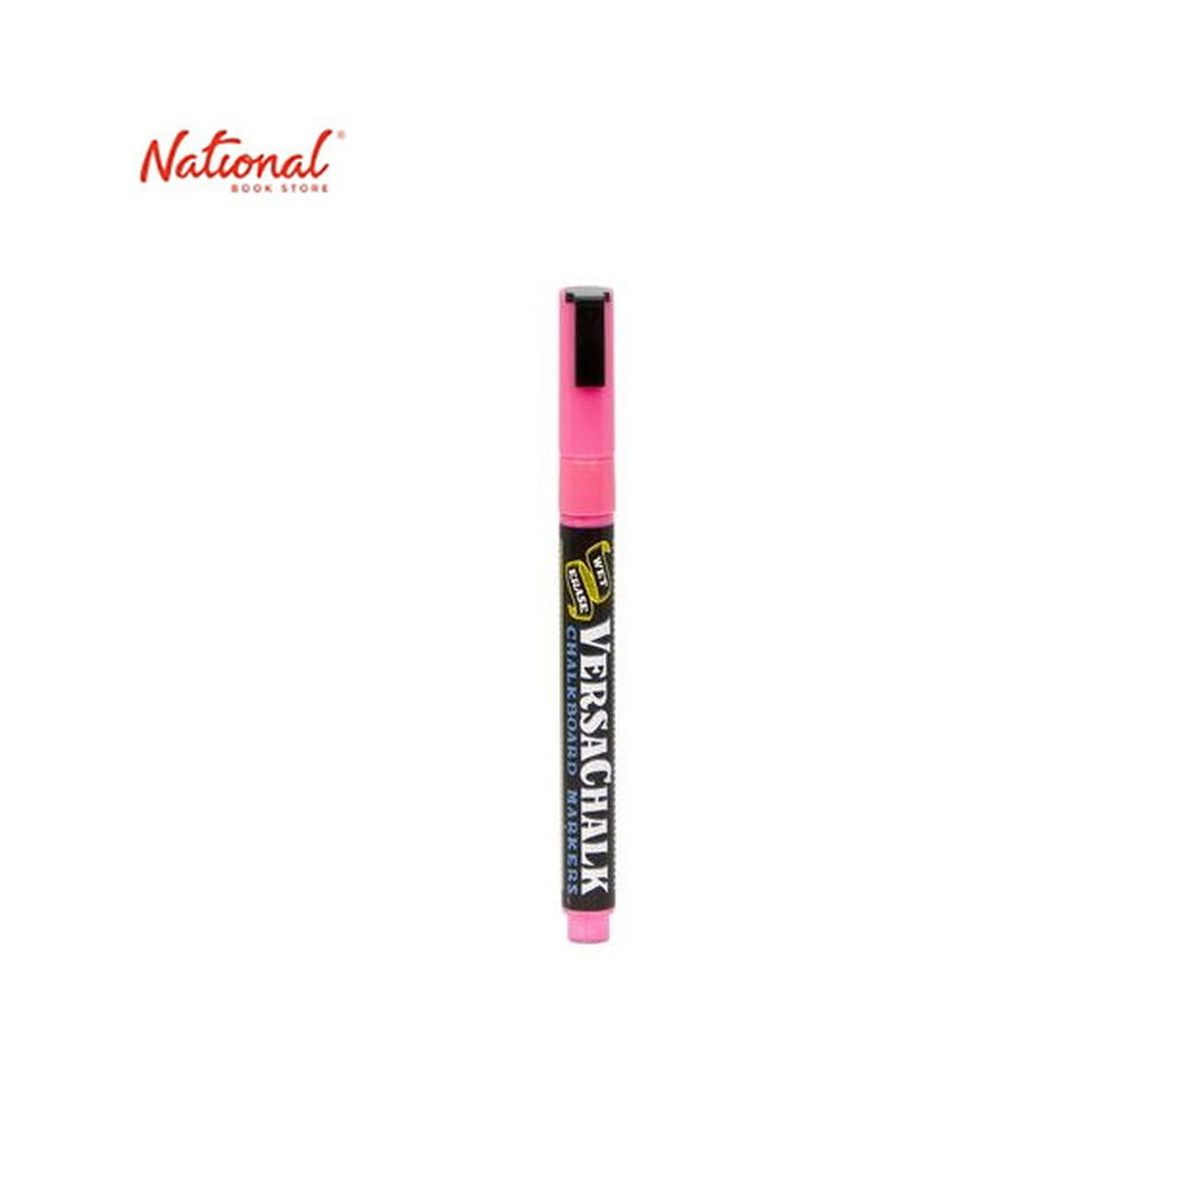 Versachalk Neon Pink Chalk Marker (Fine) Singles